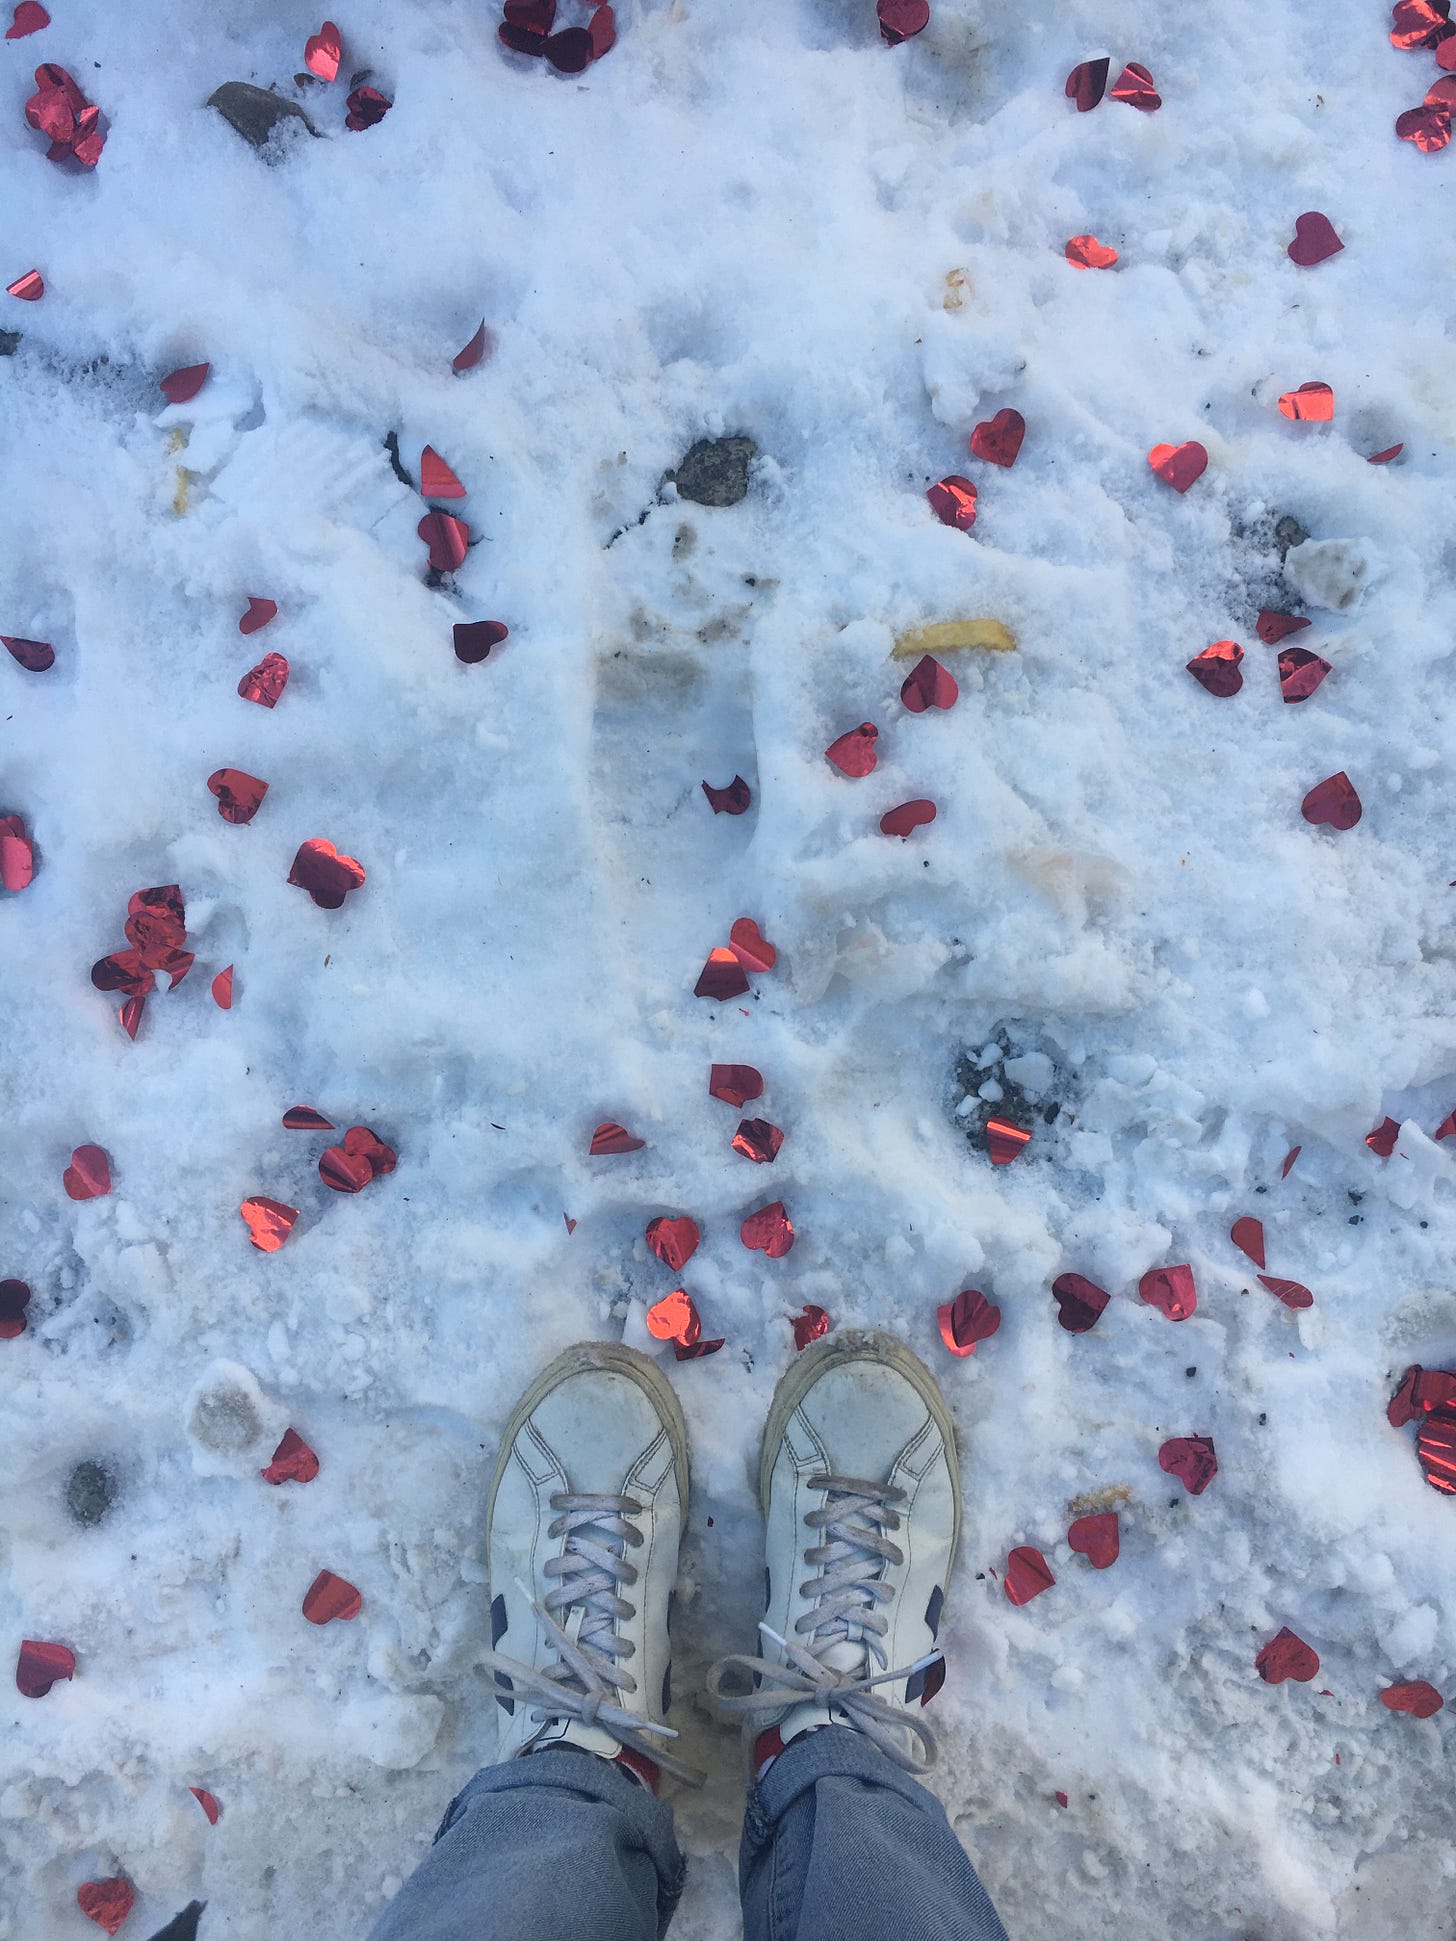 Schneebedeckter Boden, auf dem Herzkonfetti liegt. Unten ein paar Beine in heller Jeans und dreckigen weißen Turnschuhen.